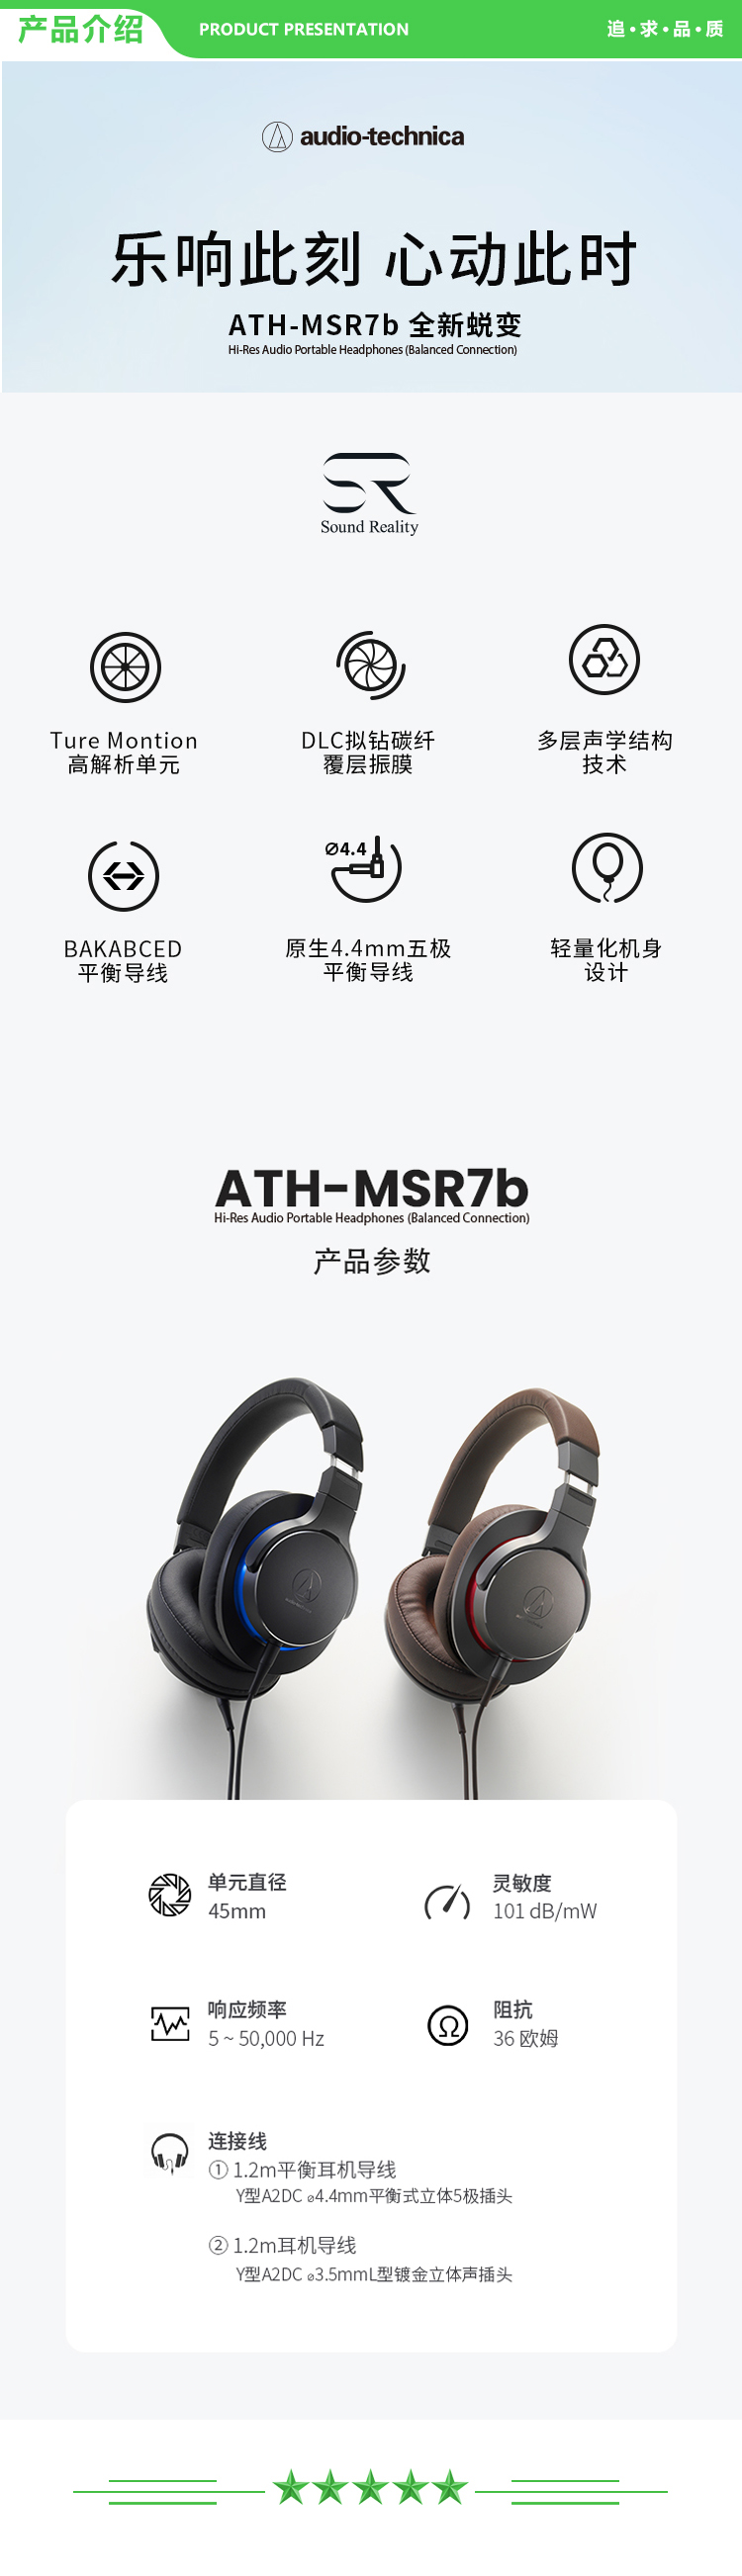 铁三角 Audio-technica MSR7b 高保真便携头戴式有线耳机 HiRes 高解析 音乐耳机 HIFI耳机 灰色 .jpg